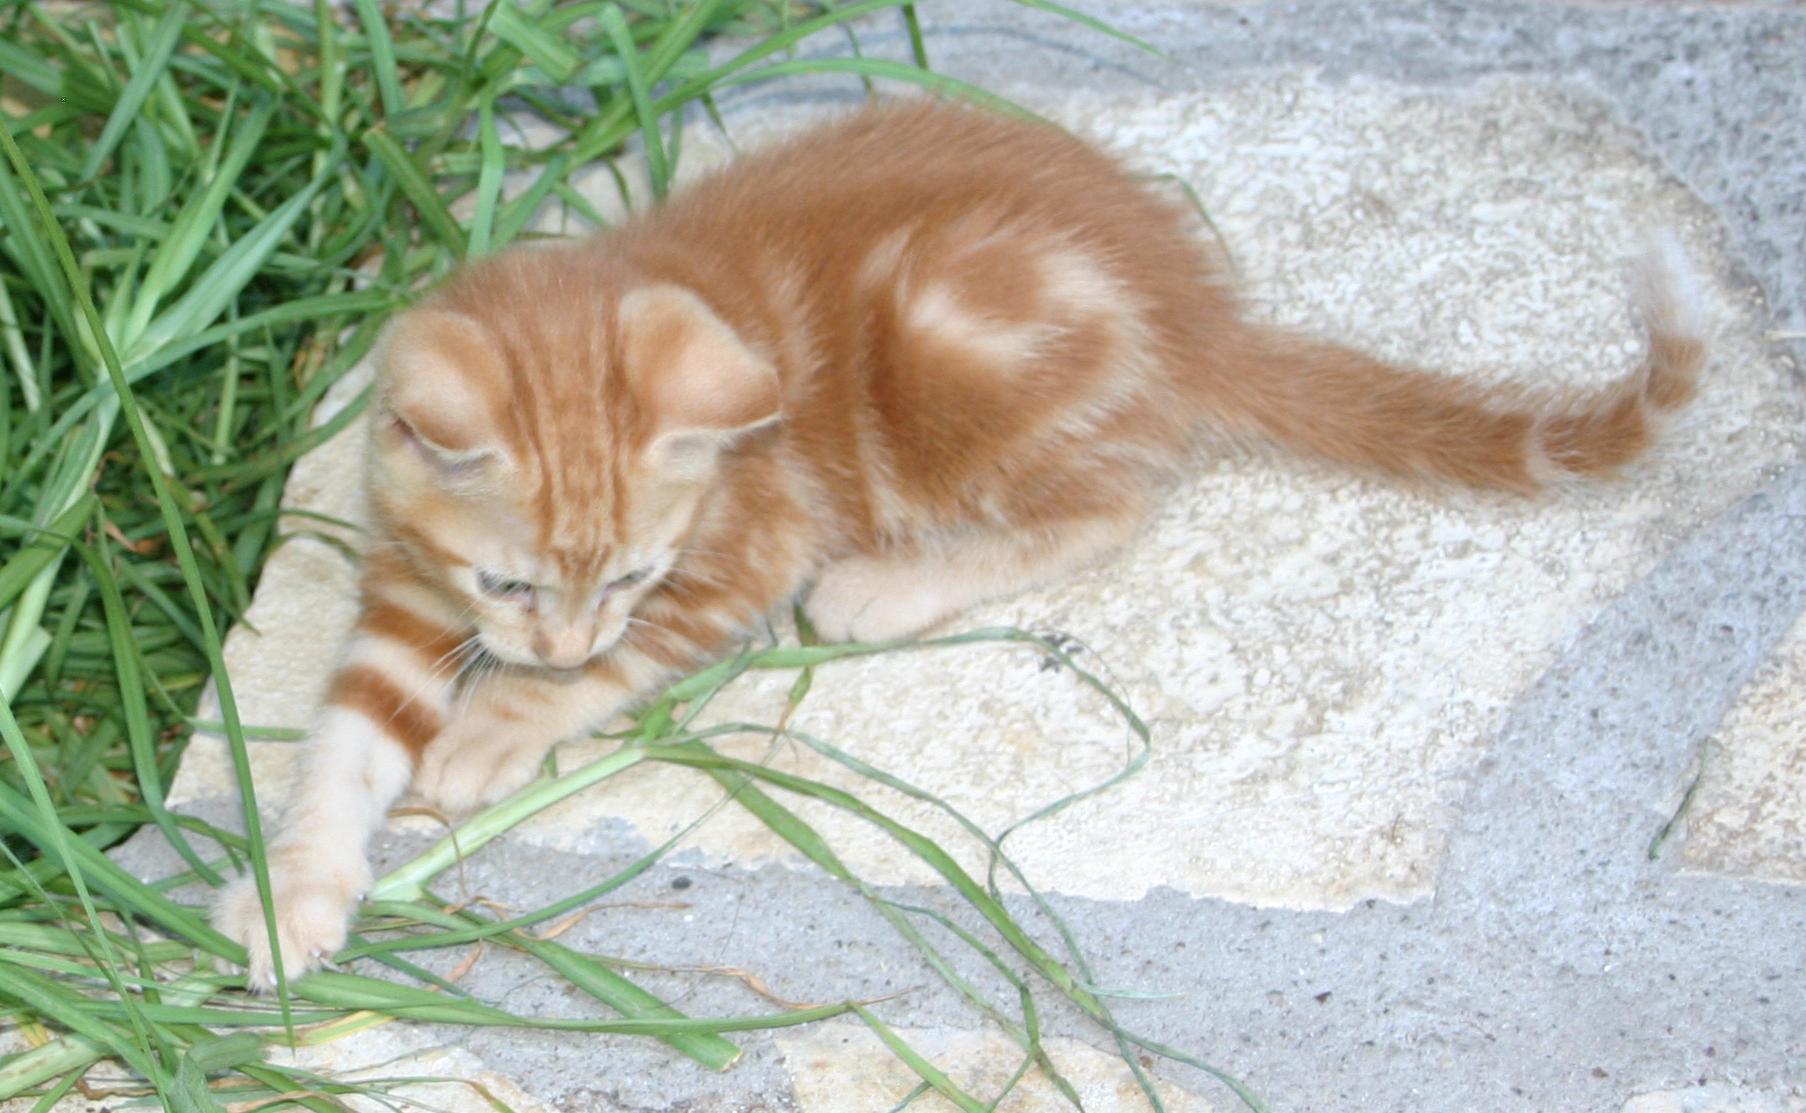 Thursday evening, 17th September, kitten at Vathi, Meganisi.